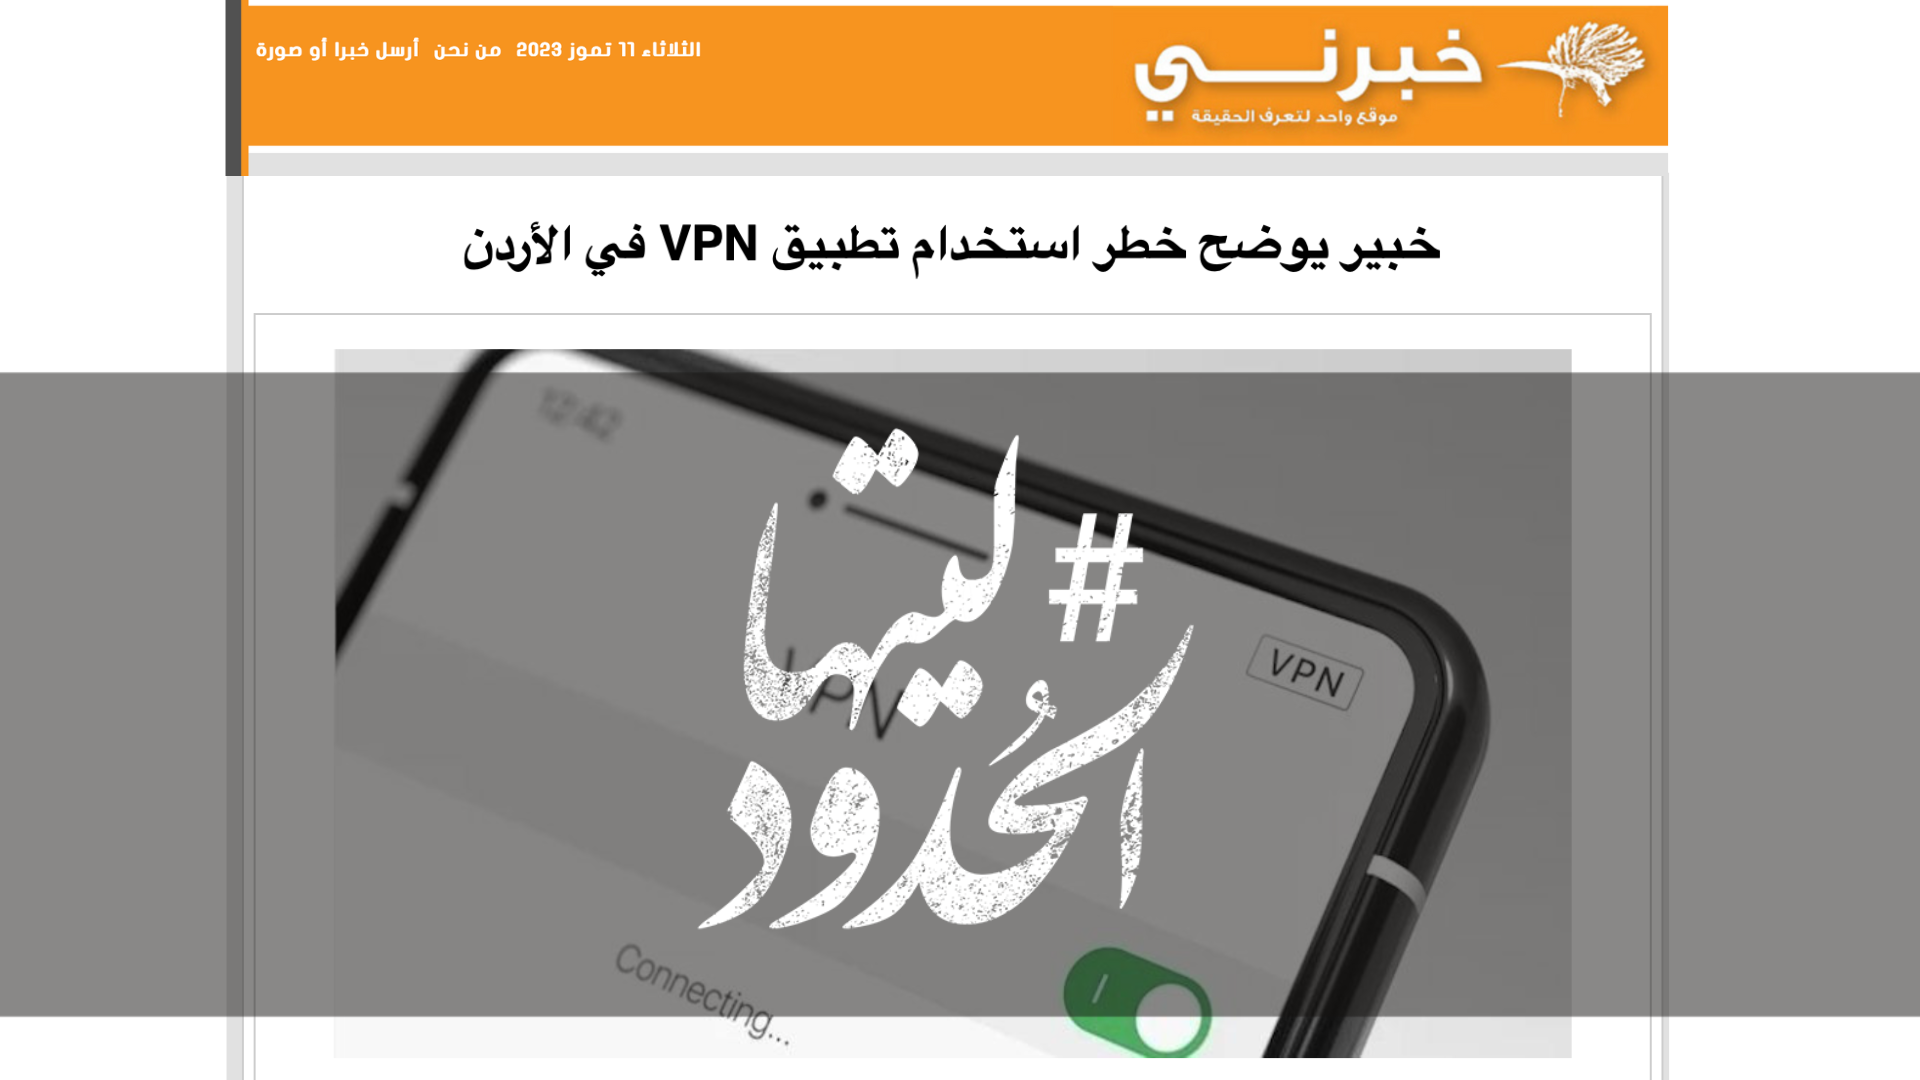 صورة خبير يوضح خطر استخدام تطبيق VPN في الأردن